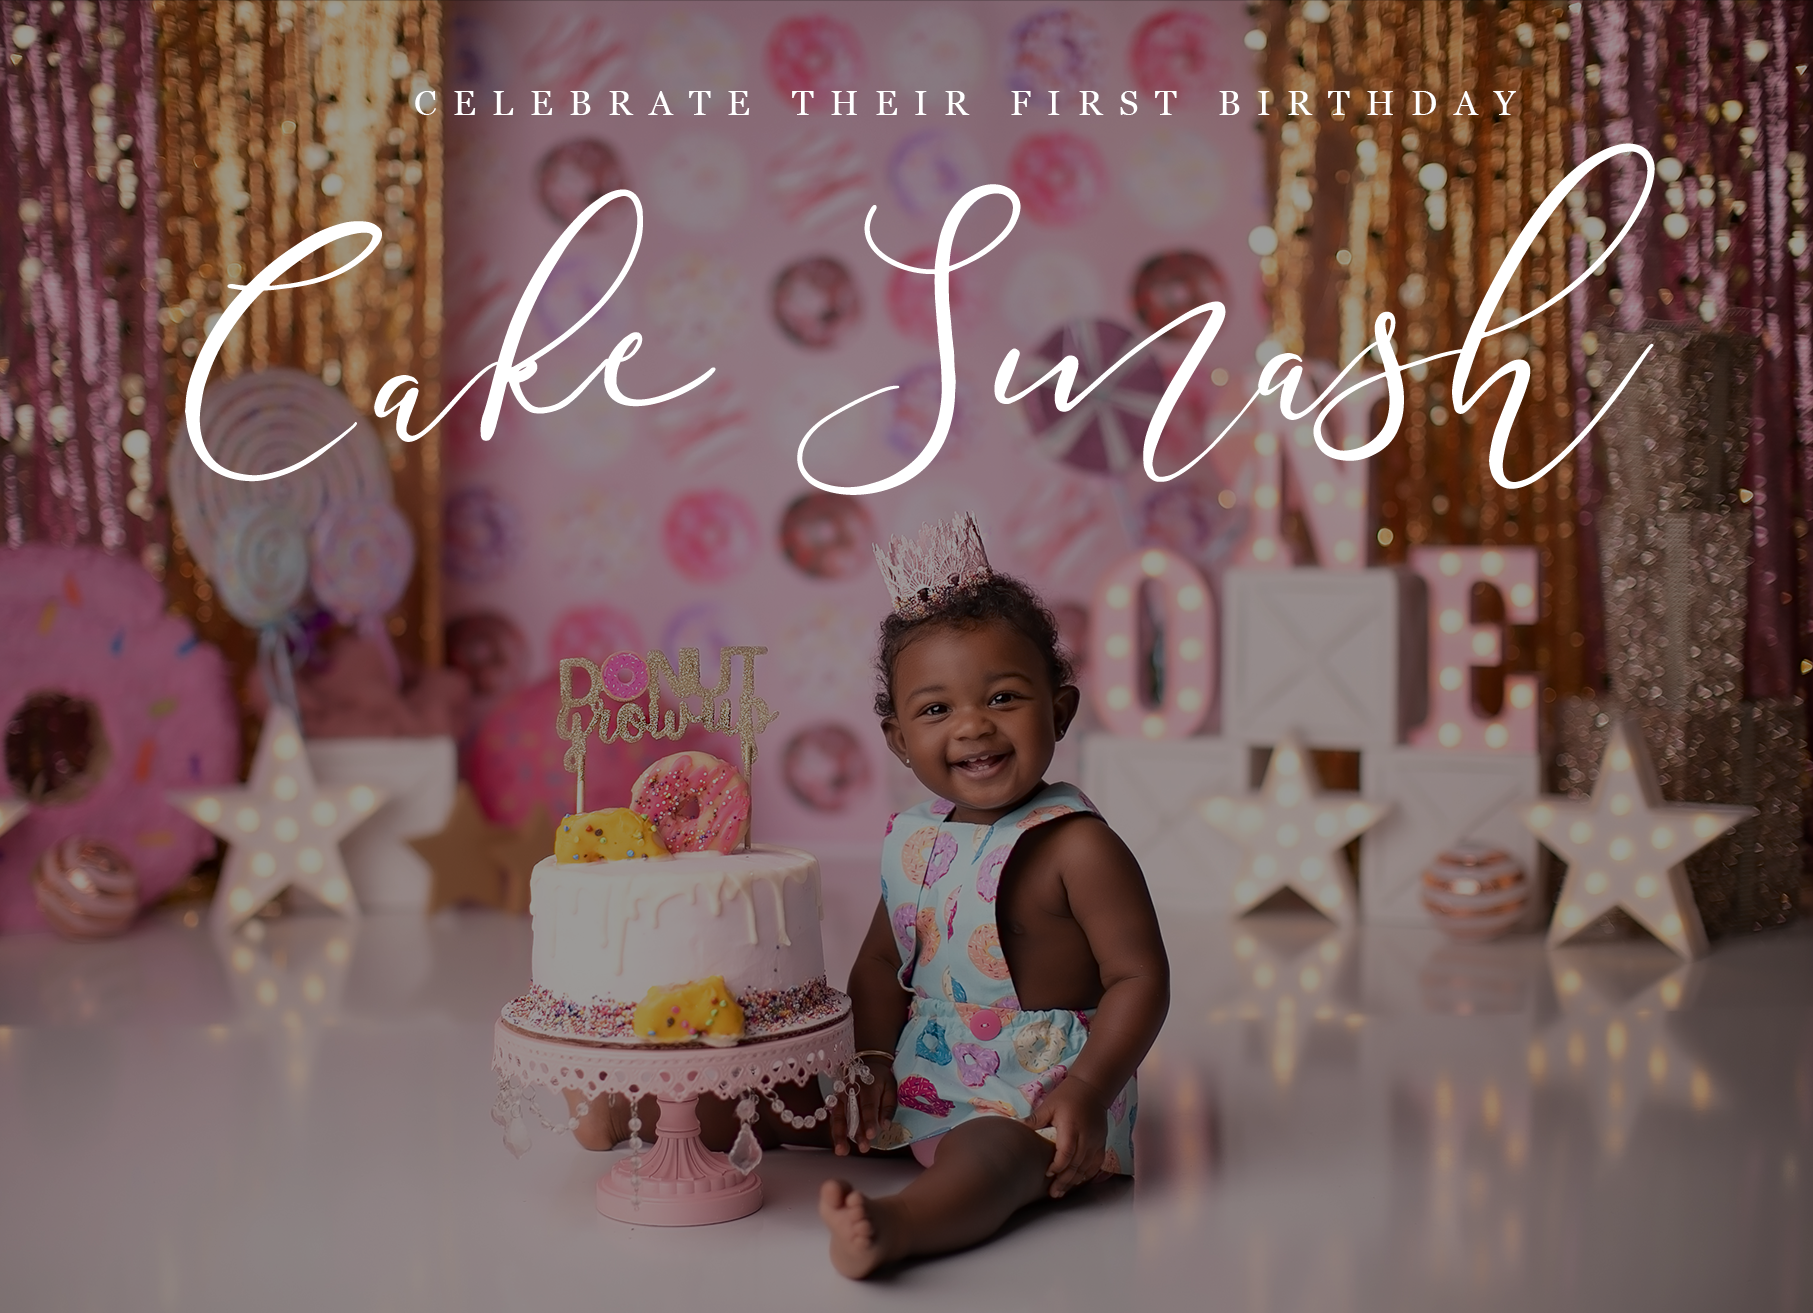 Cake Smash Theme Ideas  Crabapple Photography